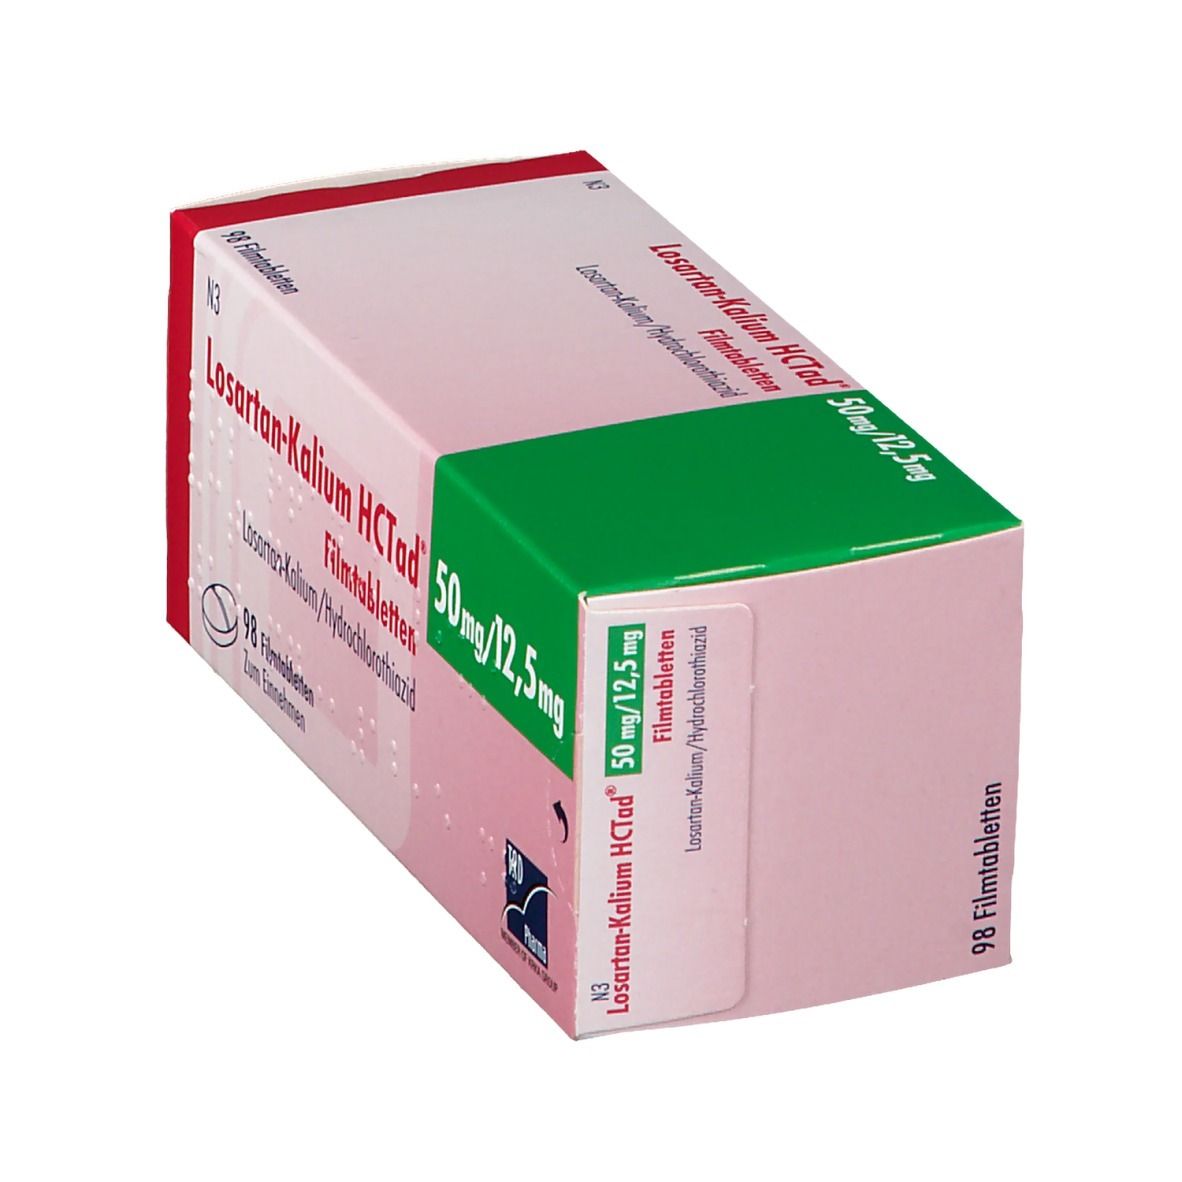 Losartan-Kalium HCTad® 50 mg/12,5 mg